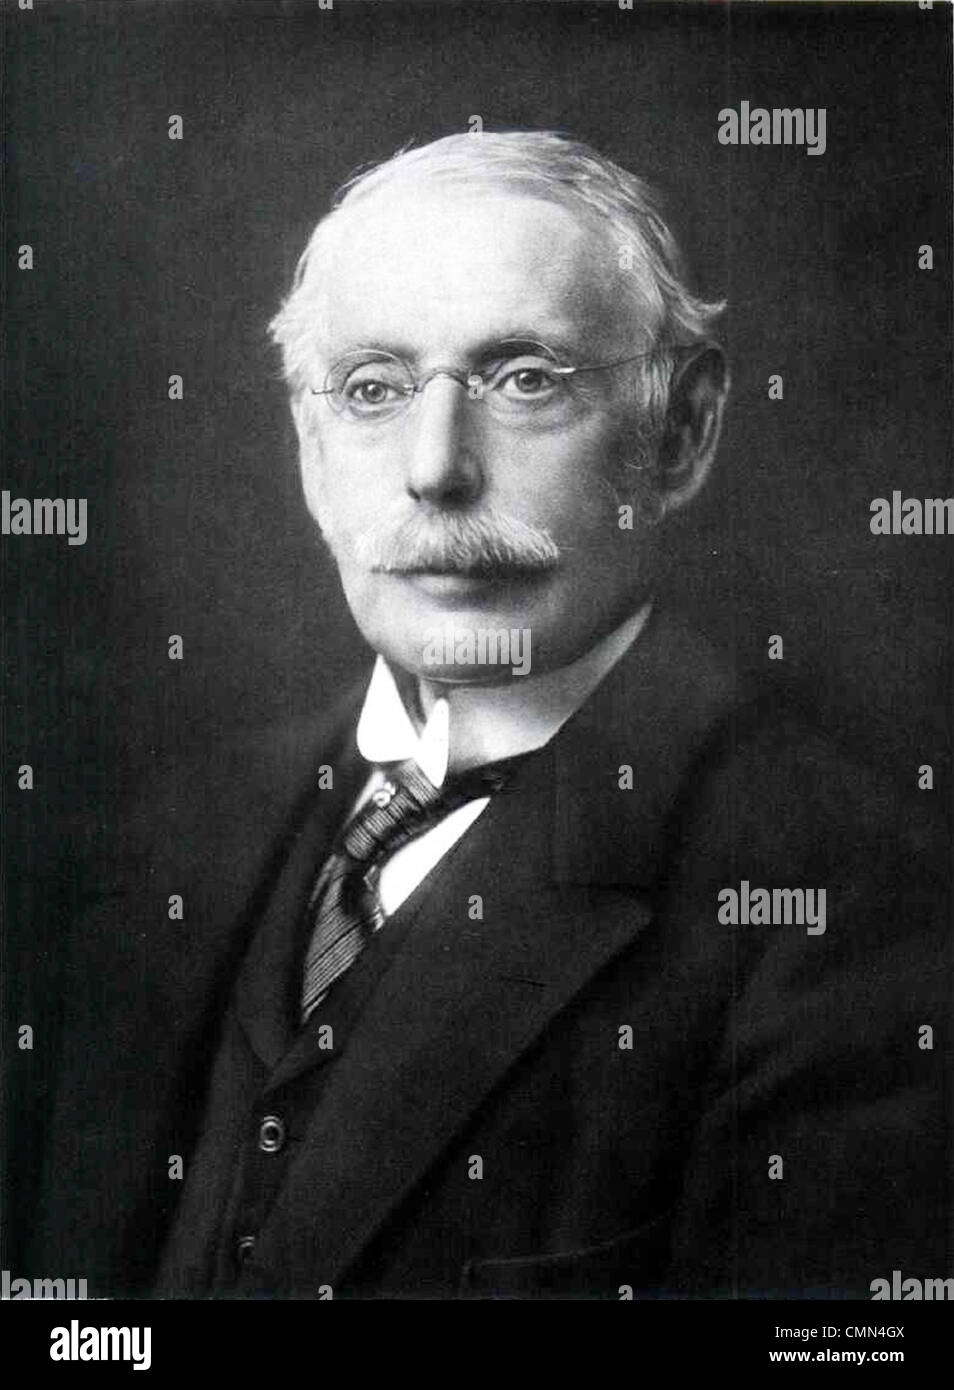 CHARLES ALGERNON PARSONS (1854-1931) ingegnere britannico che ha inventato la turbina a vapore Foto Stock